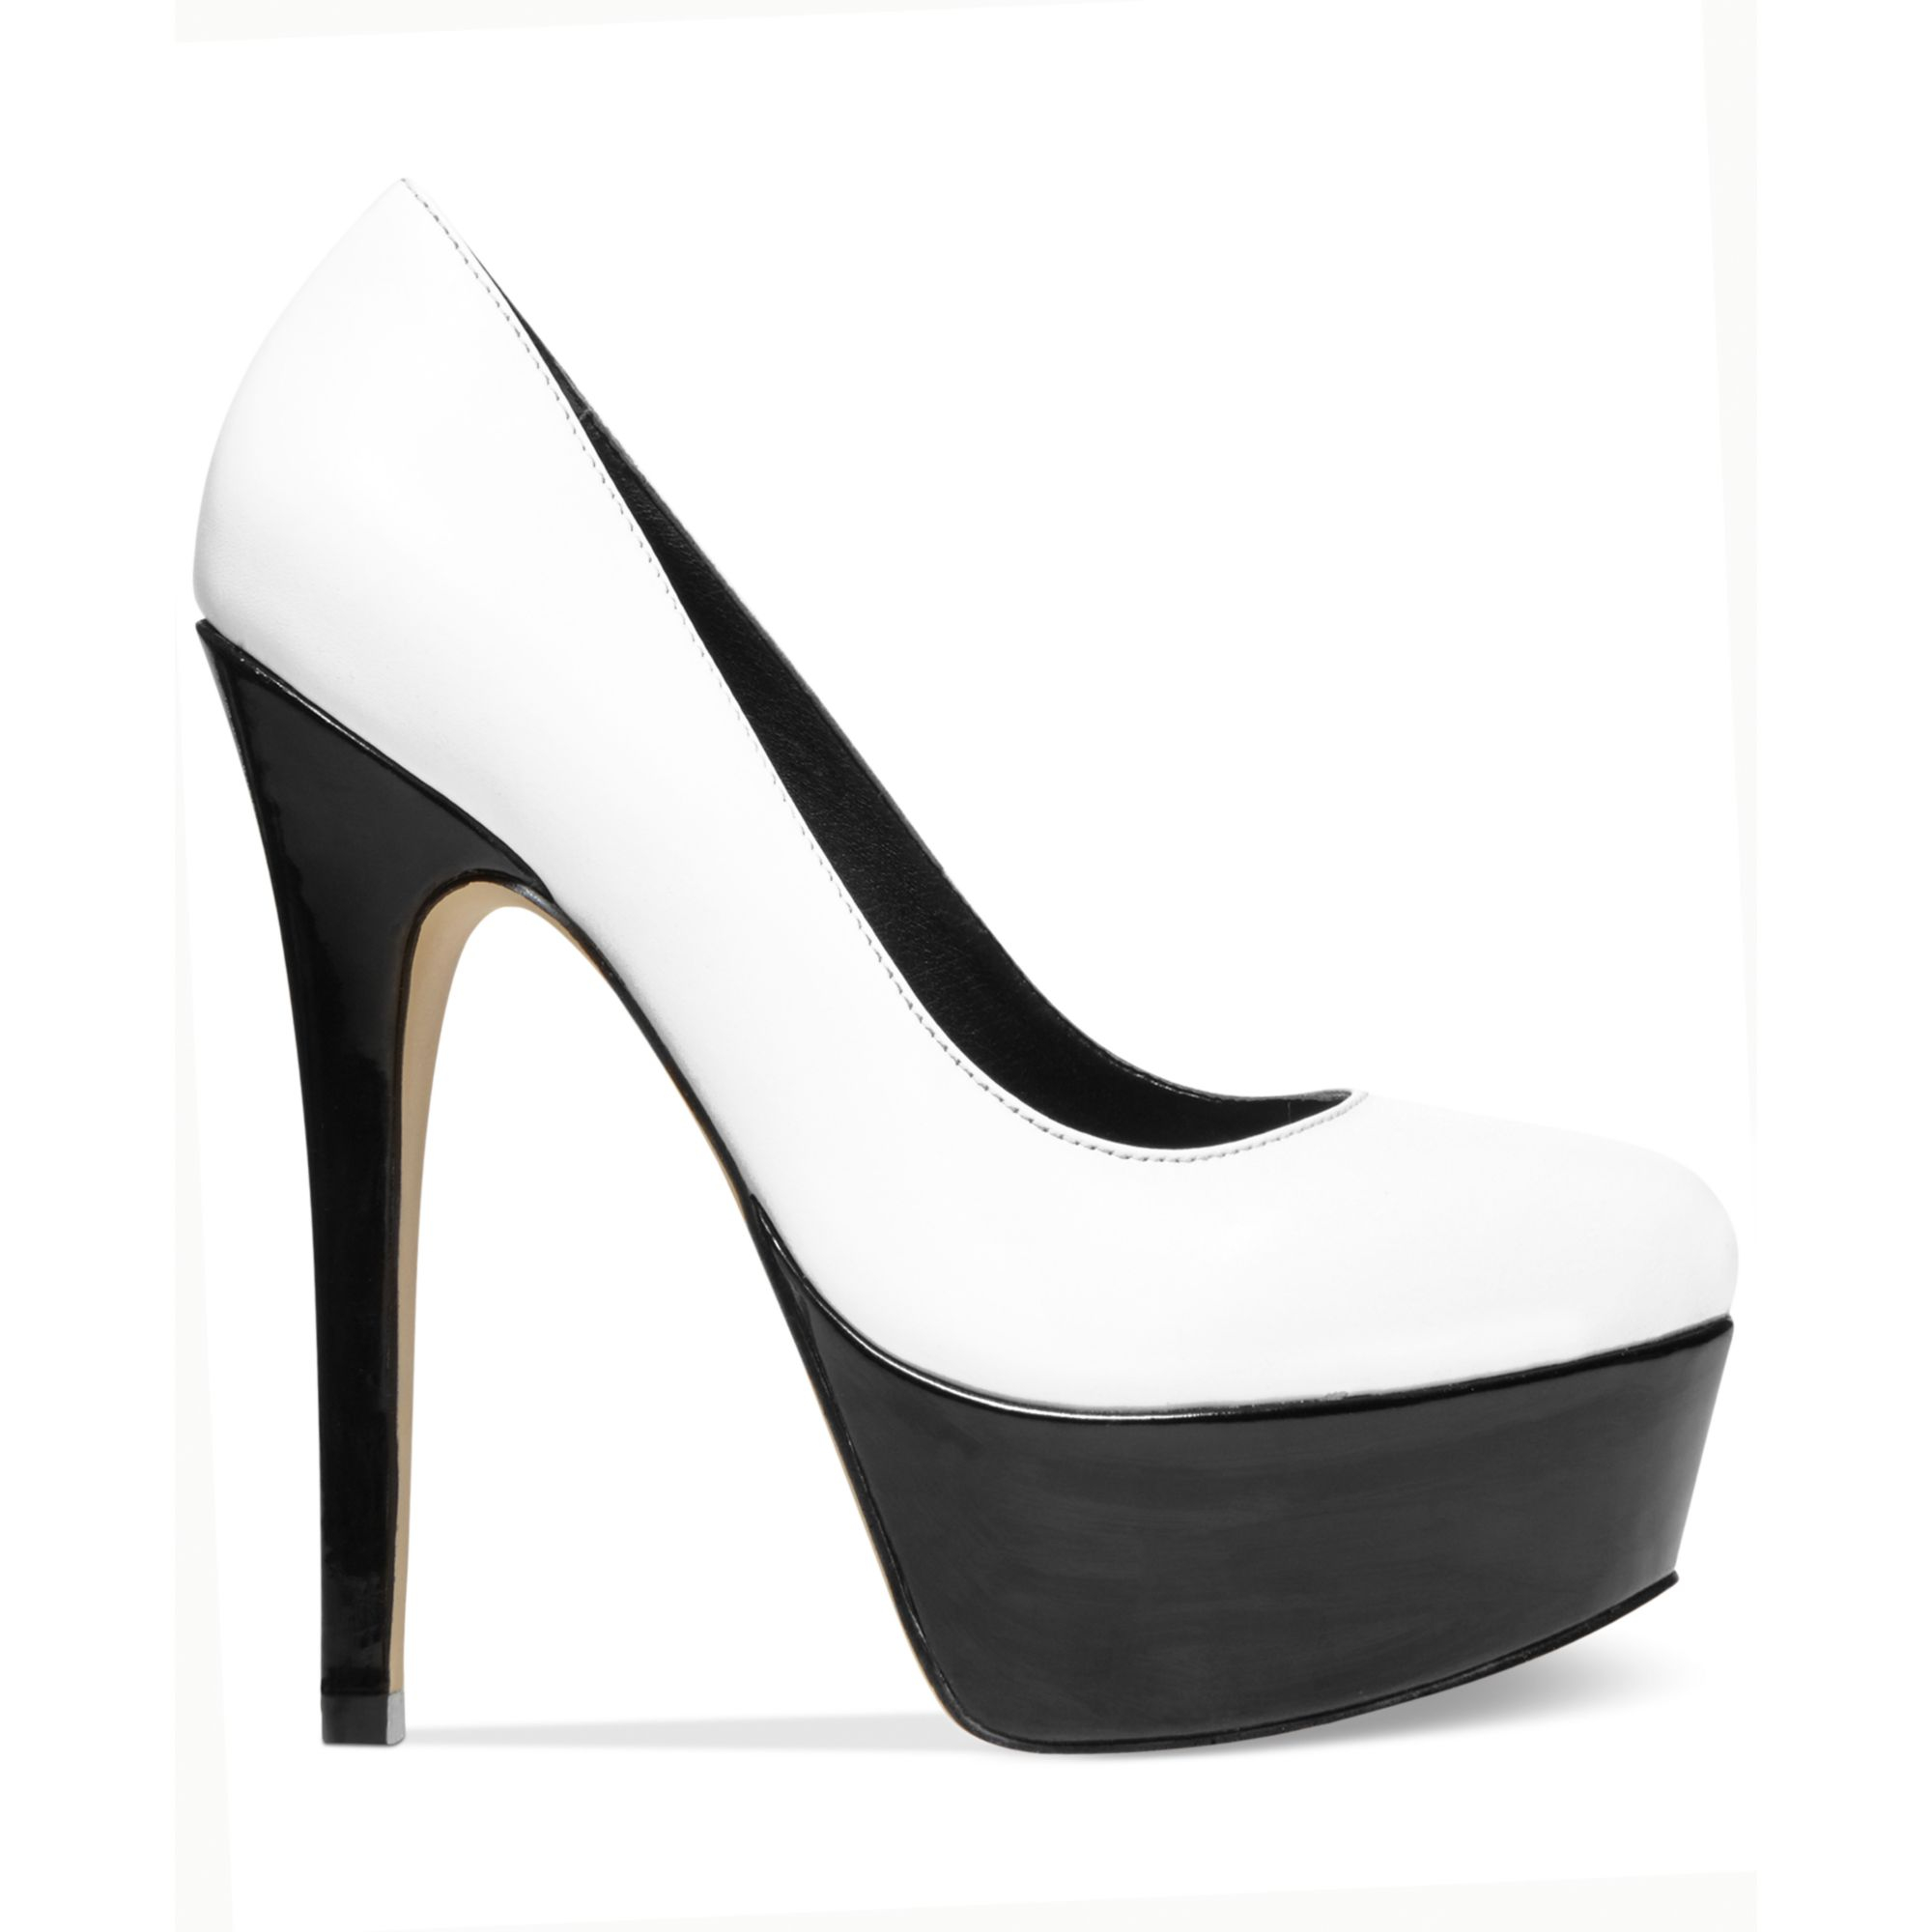 steve madden black and white heels